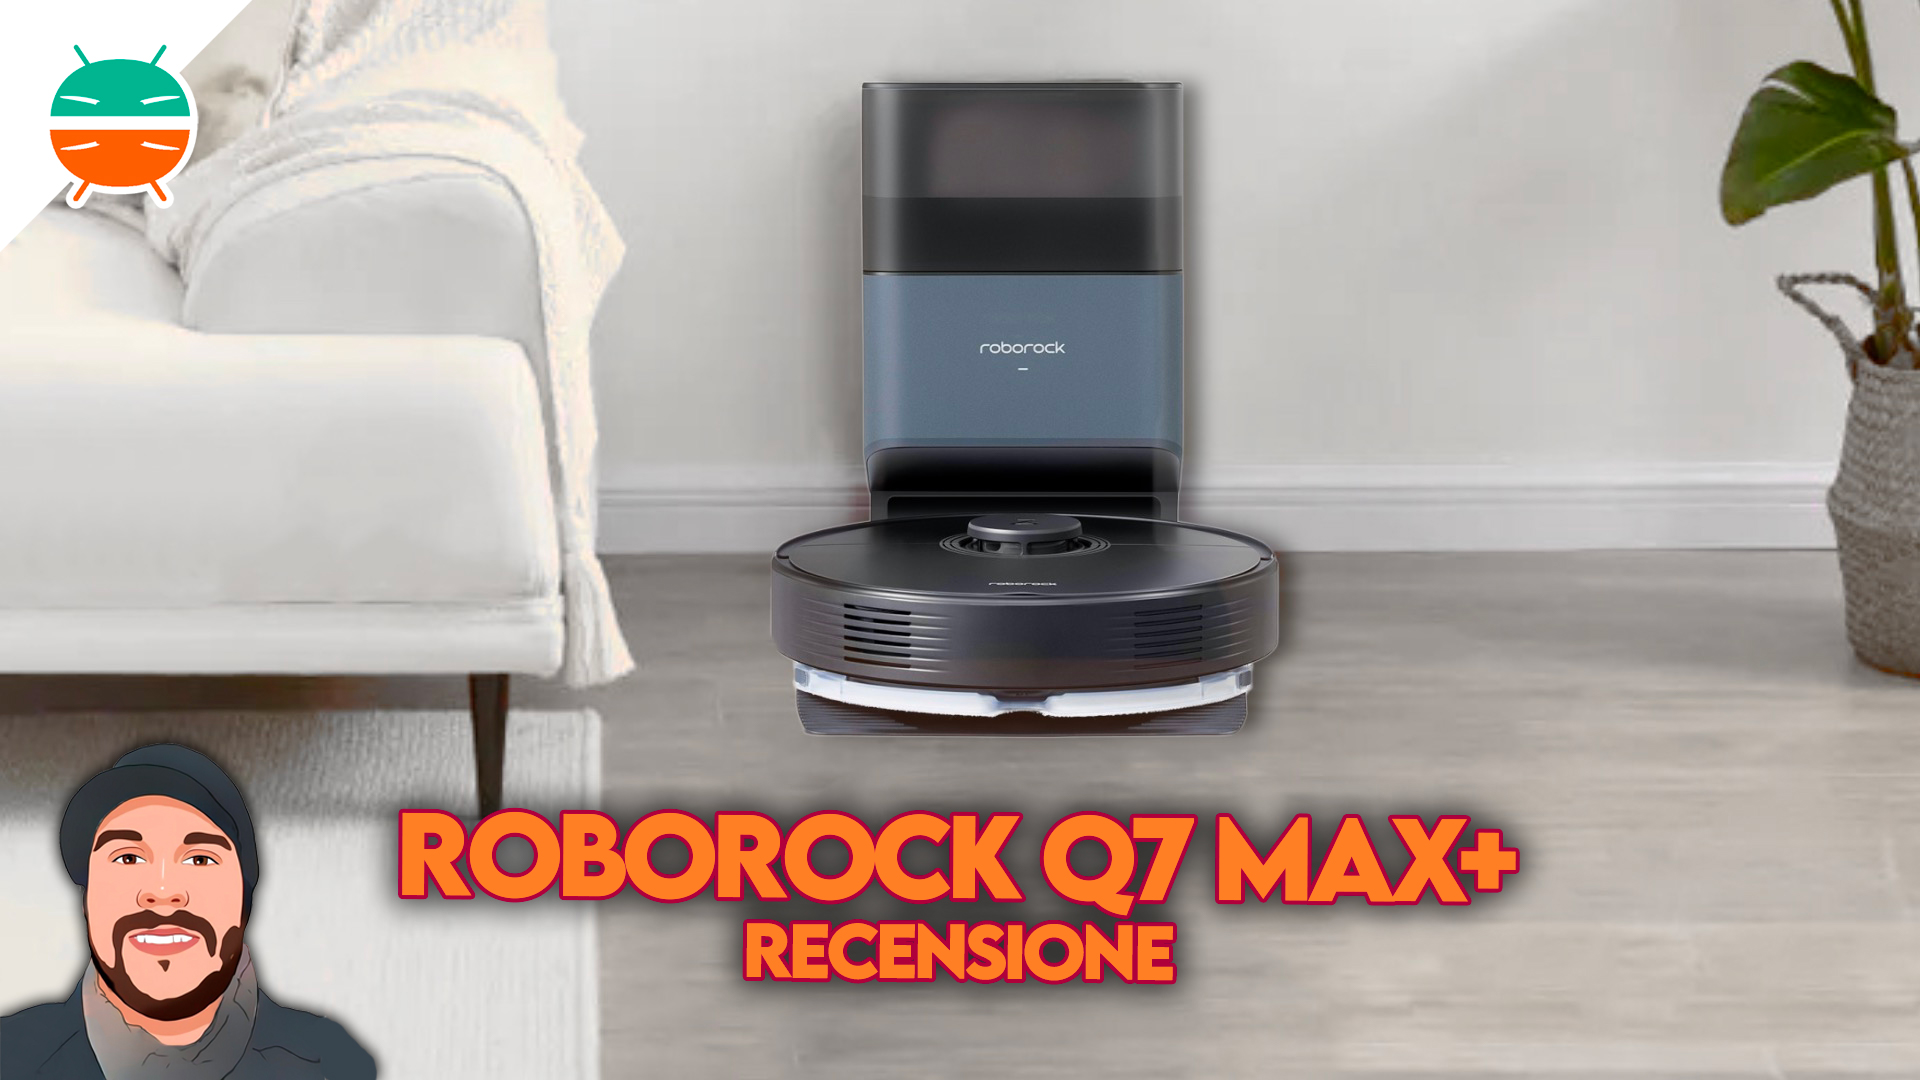 Roborock Q7 Max Plus